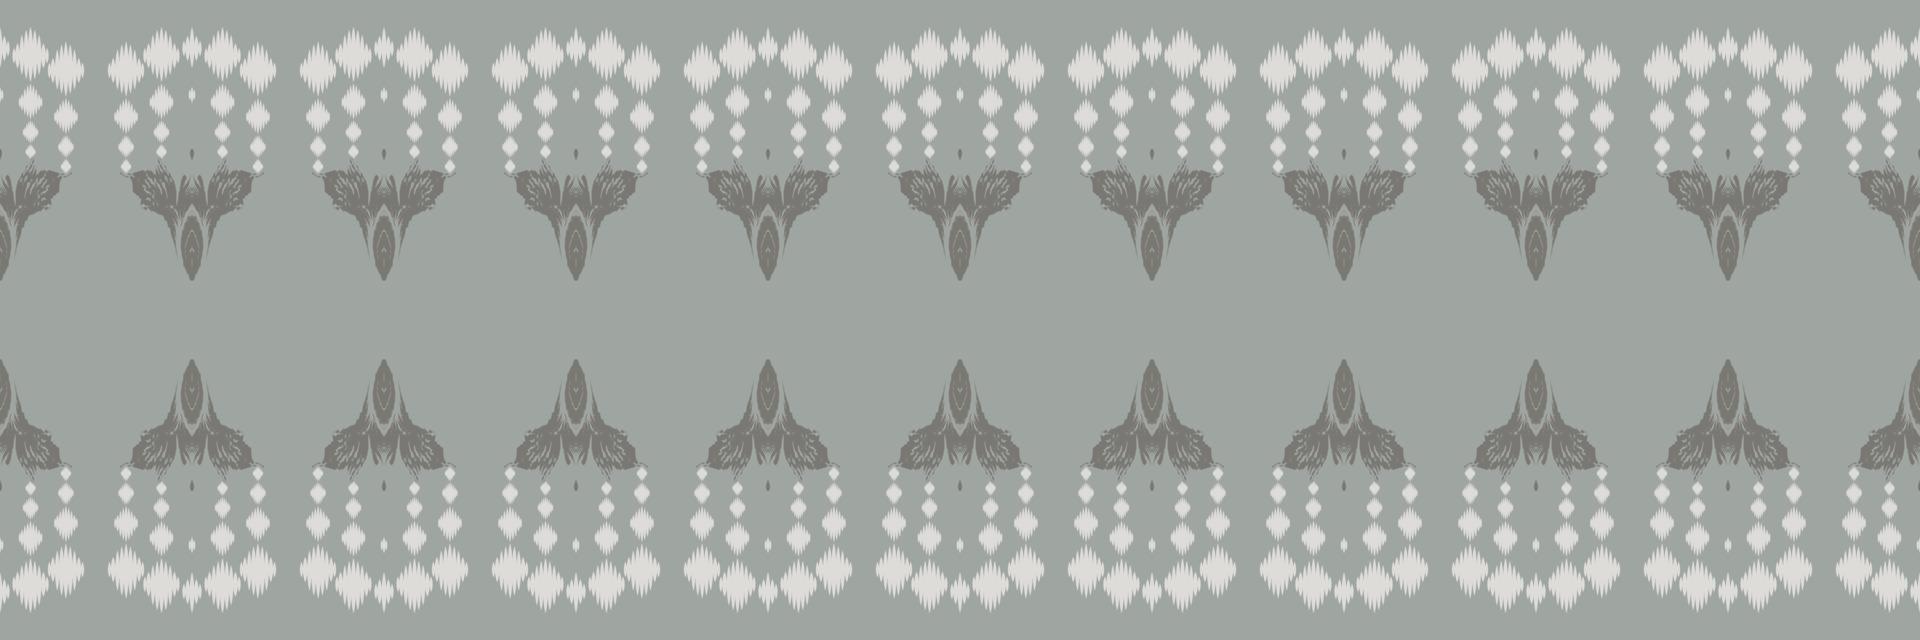 ikat streift nahtloses muster des tribal-hintergrundes. ethnische geometrische batik ikkat digitaler vektor textildesign für drucke stoff saree mughal pinsel symbol schwaden textur kurti kurtis kurtas